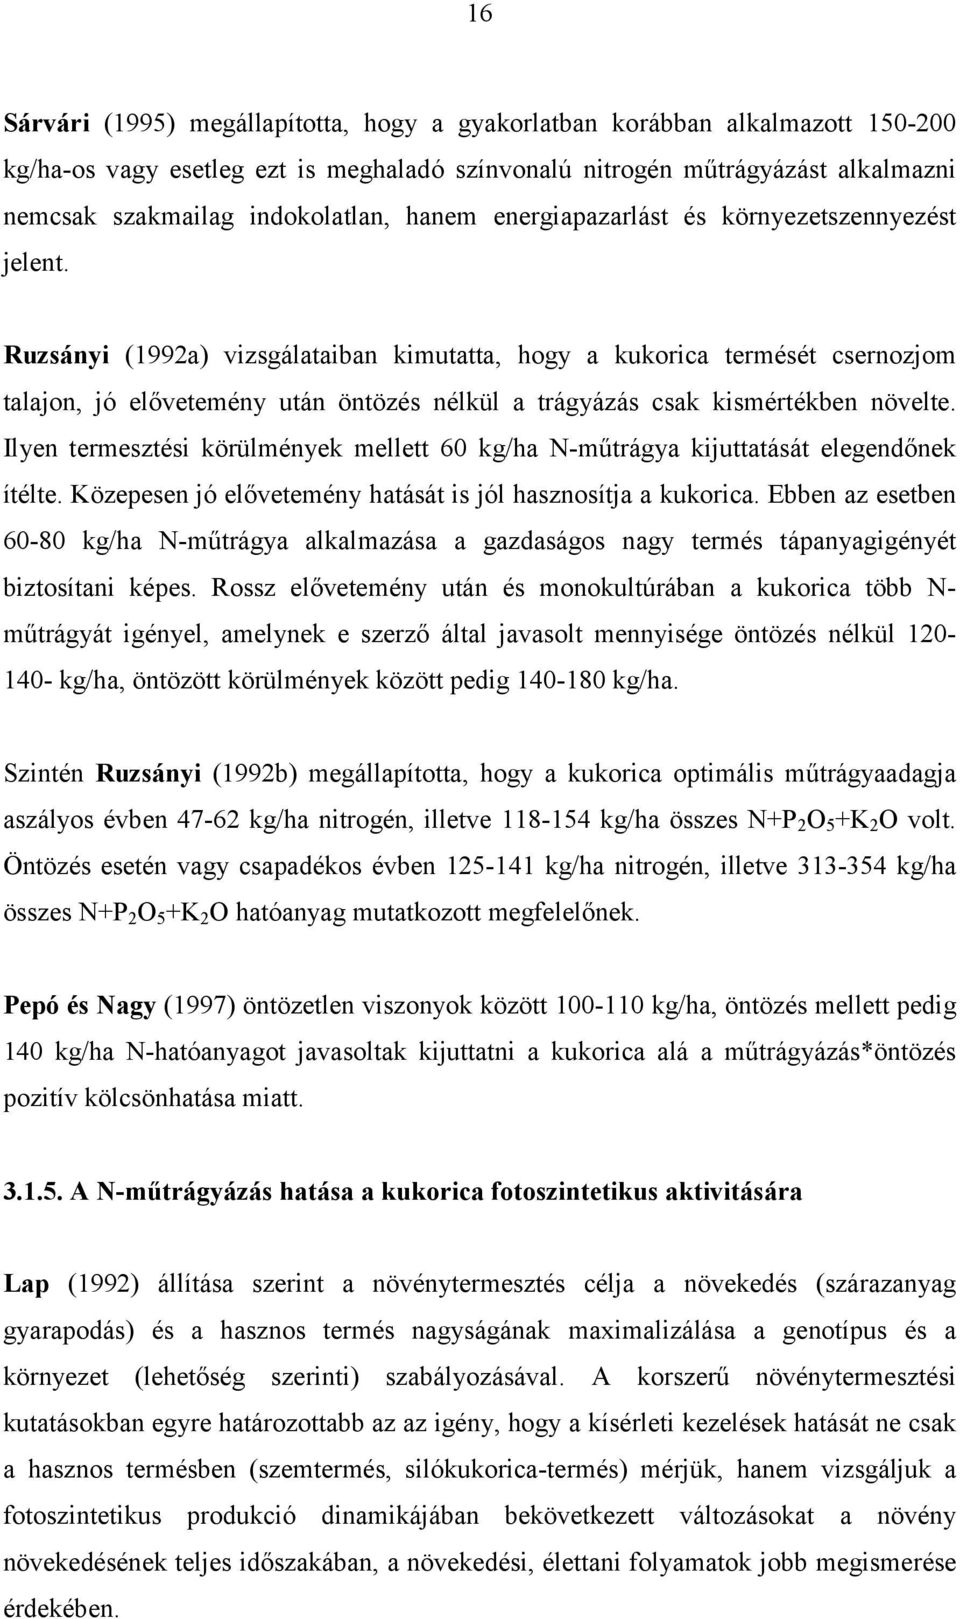 Ruzsányi (1992a) vizsgálataiban kimutatta, hogy a kukorica termését csernozjom talajon, jó elővetemény után öntözés nélkül a trágyázás csak kismértékben növelte.